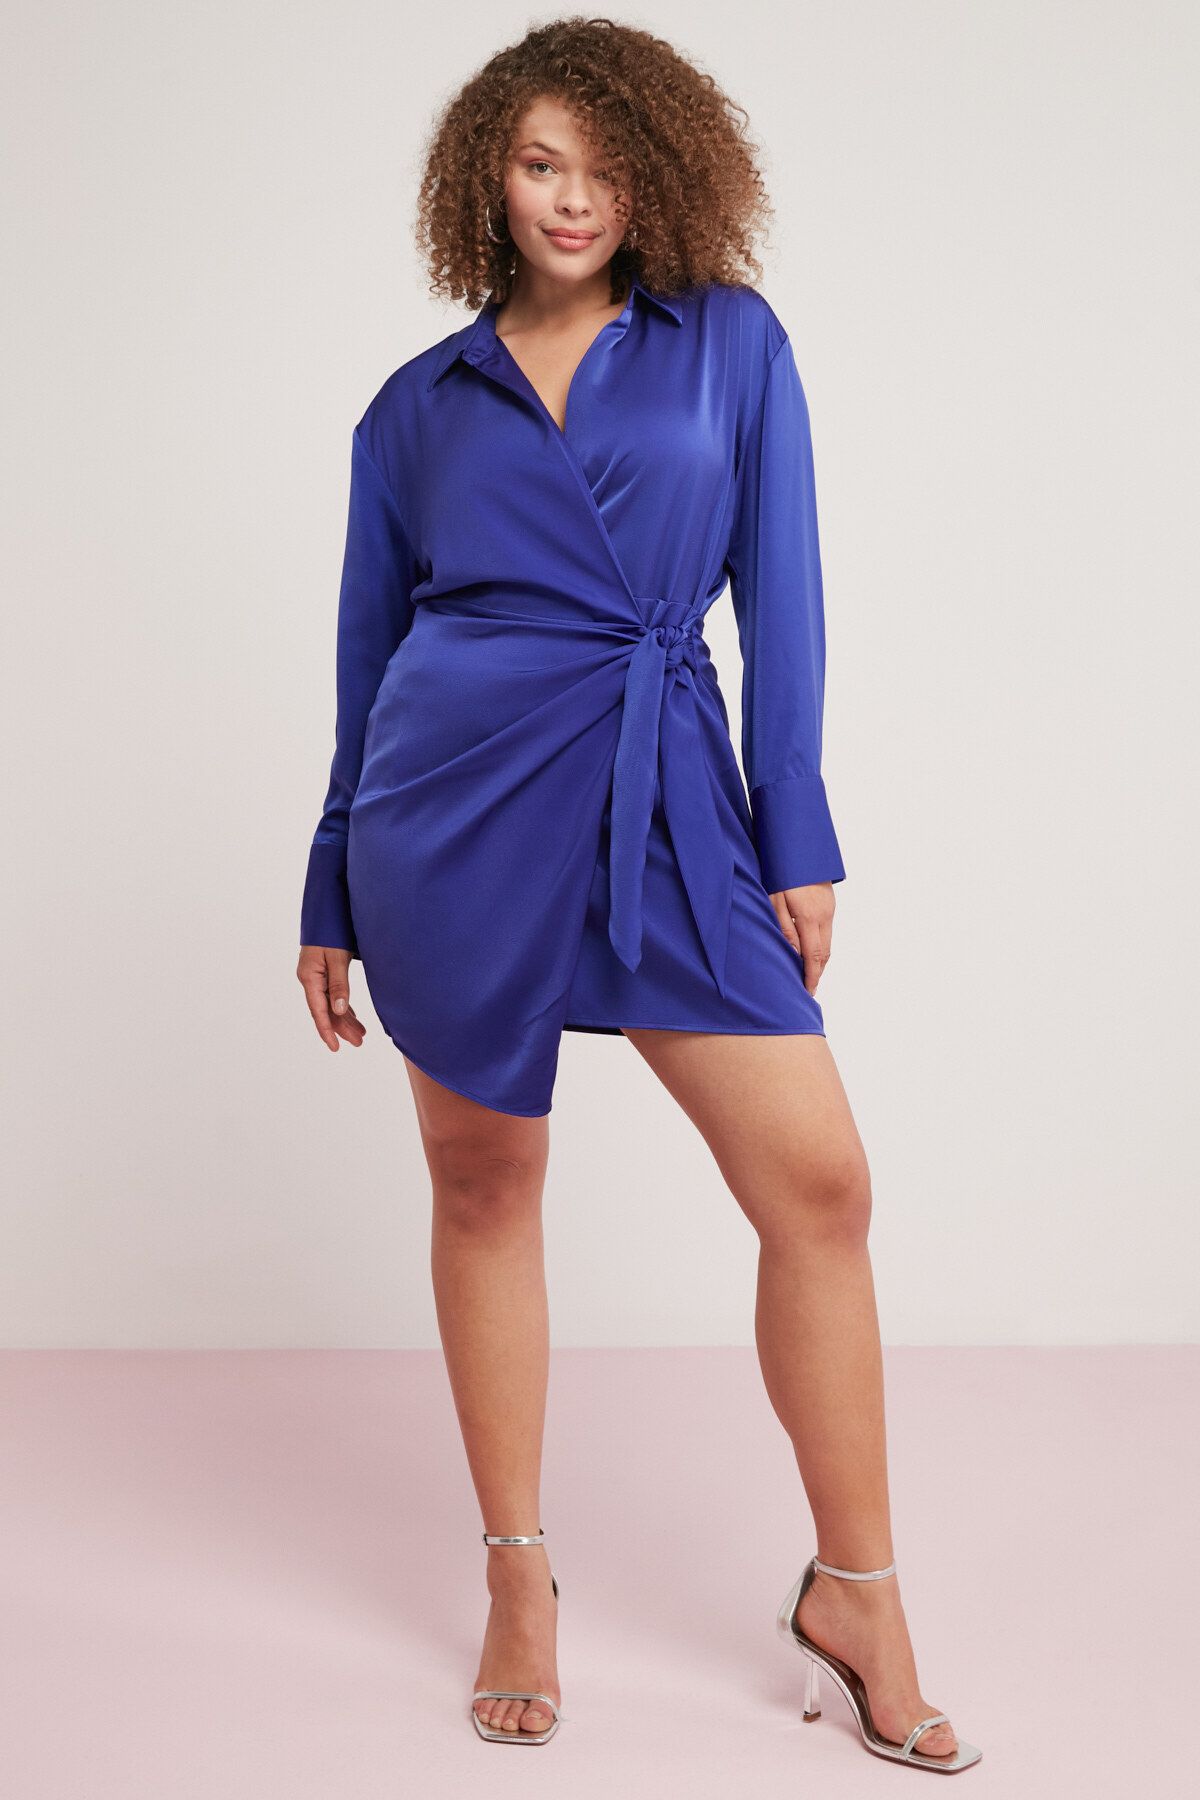 ETHIQUET Dıone Kadın Floş Viskon Saten Asimetrik Kesim Bağlamalı Kısa Mavi Büyük Beden Elbise